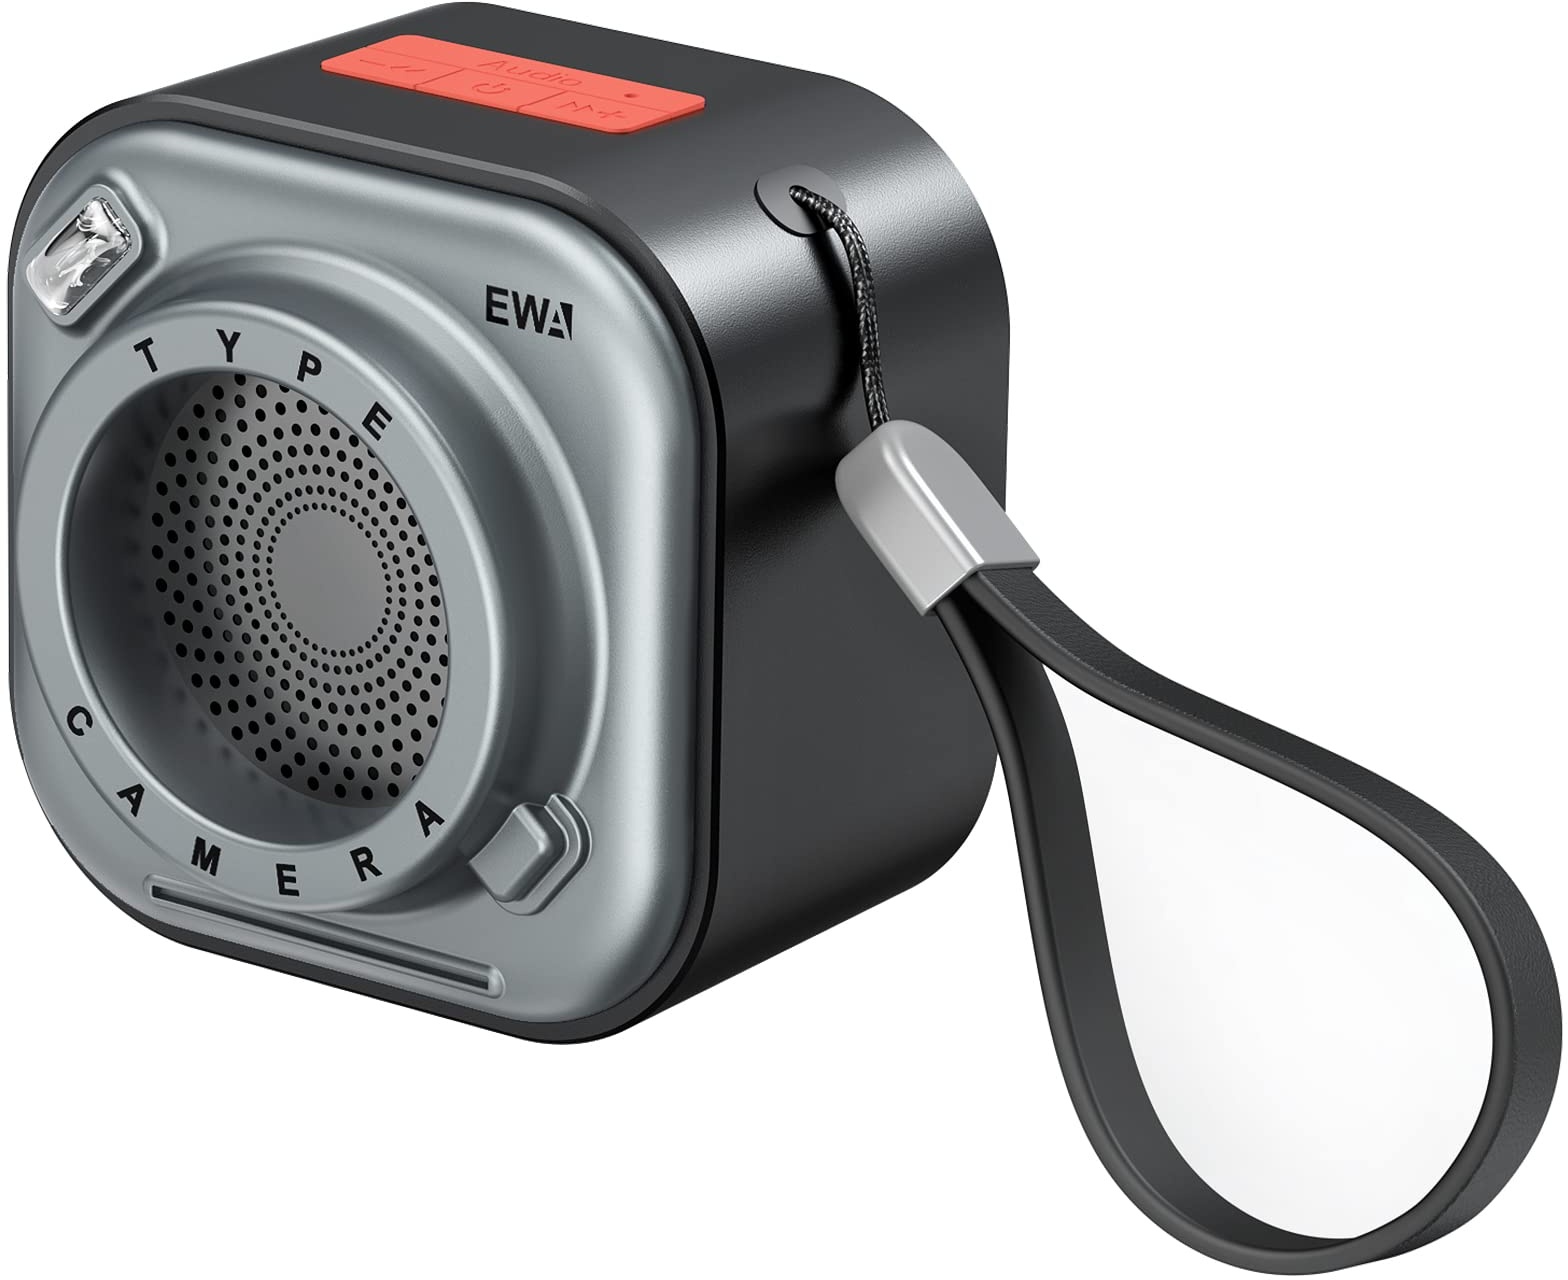 EWA Kabelloser Mini-Bluetooth-Lautsprecher mit Umhängeband, mit Bass-Radiator, einzigartiger Kamera-Look, unterstützt TF-Karten, klein Aber hohe Lautstärke, tragbar (Schwarz)